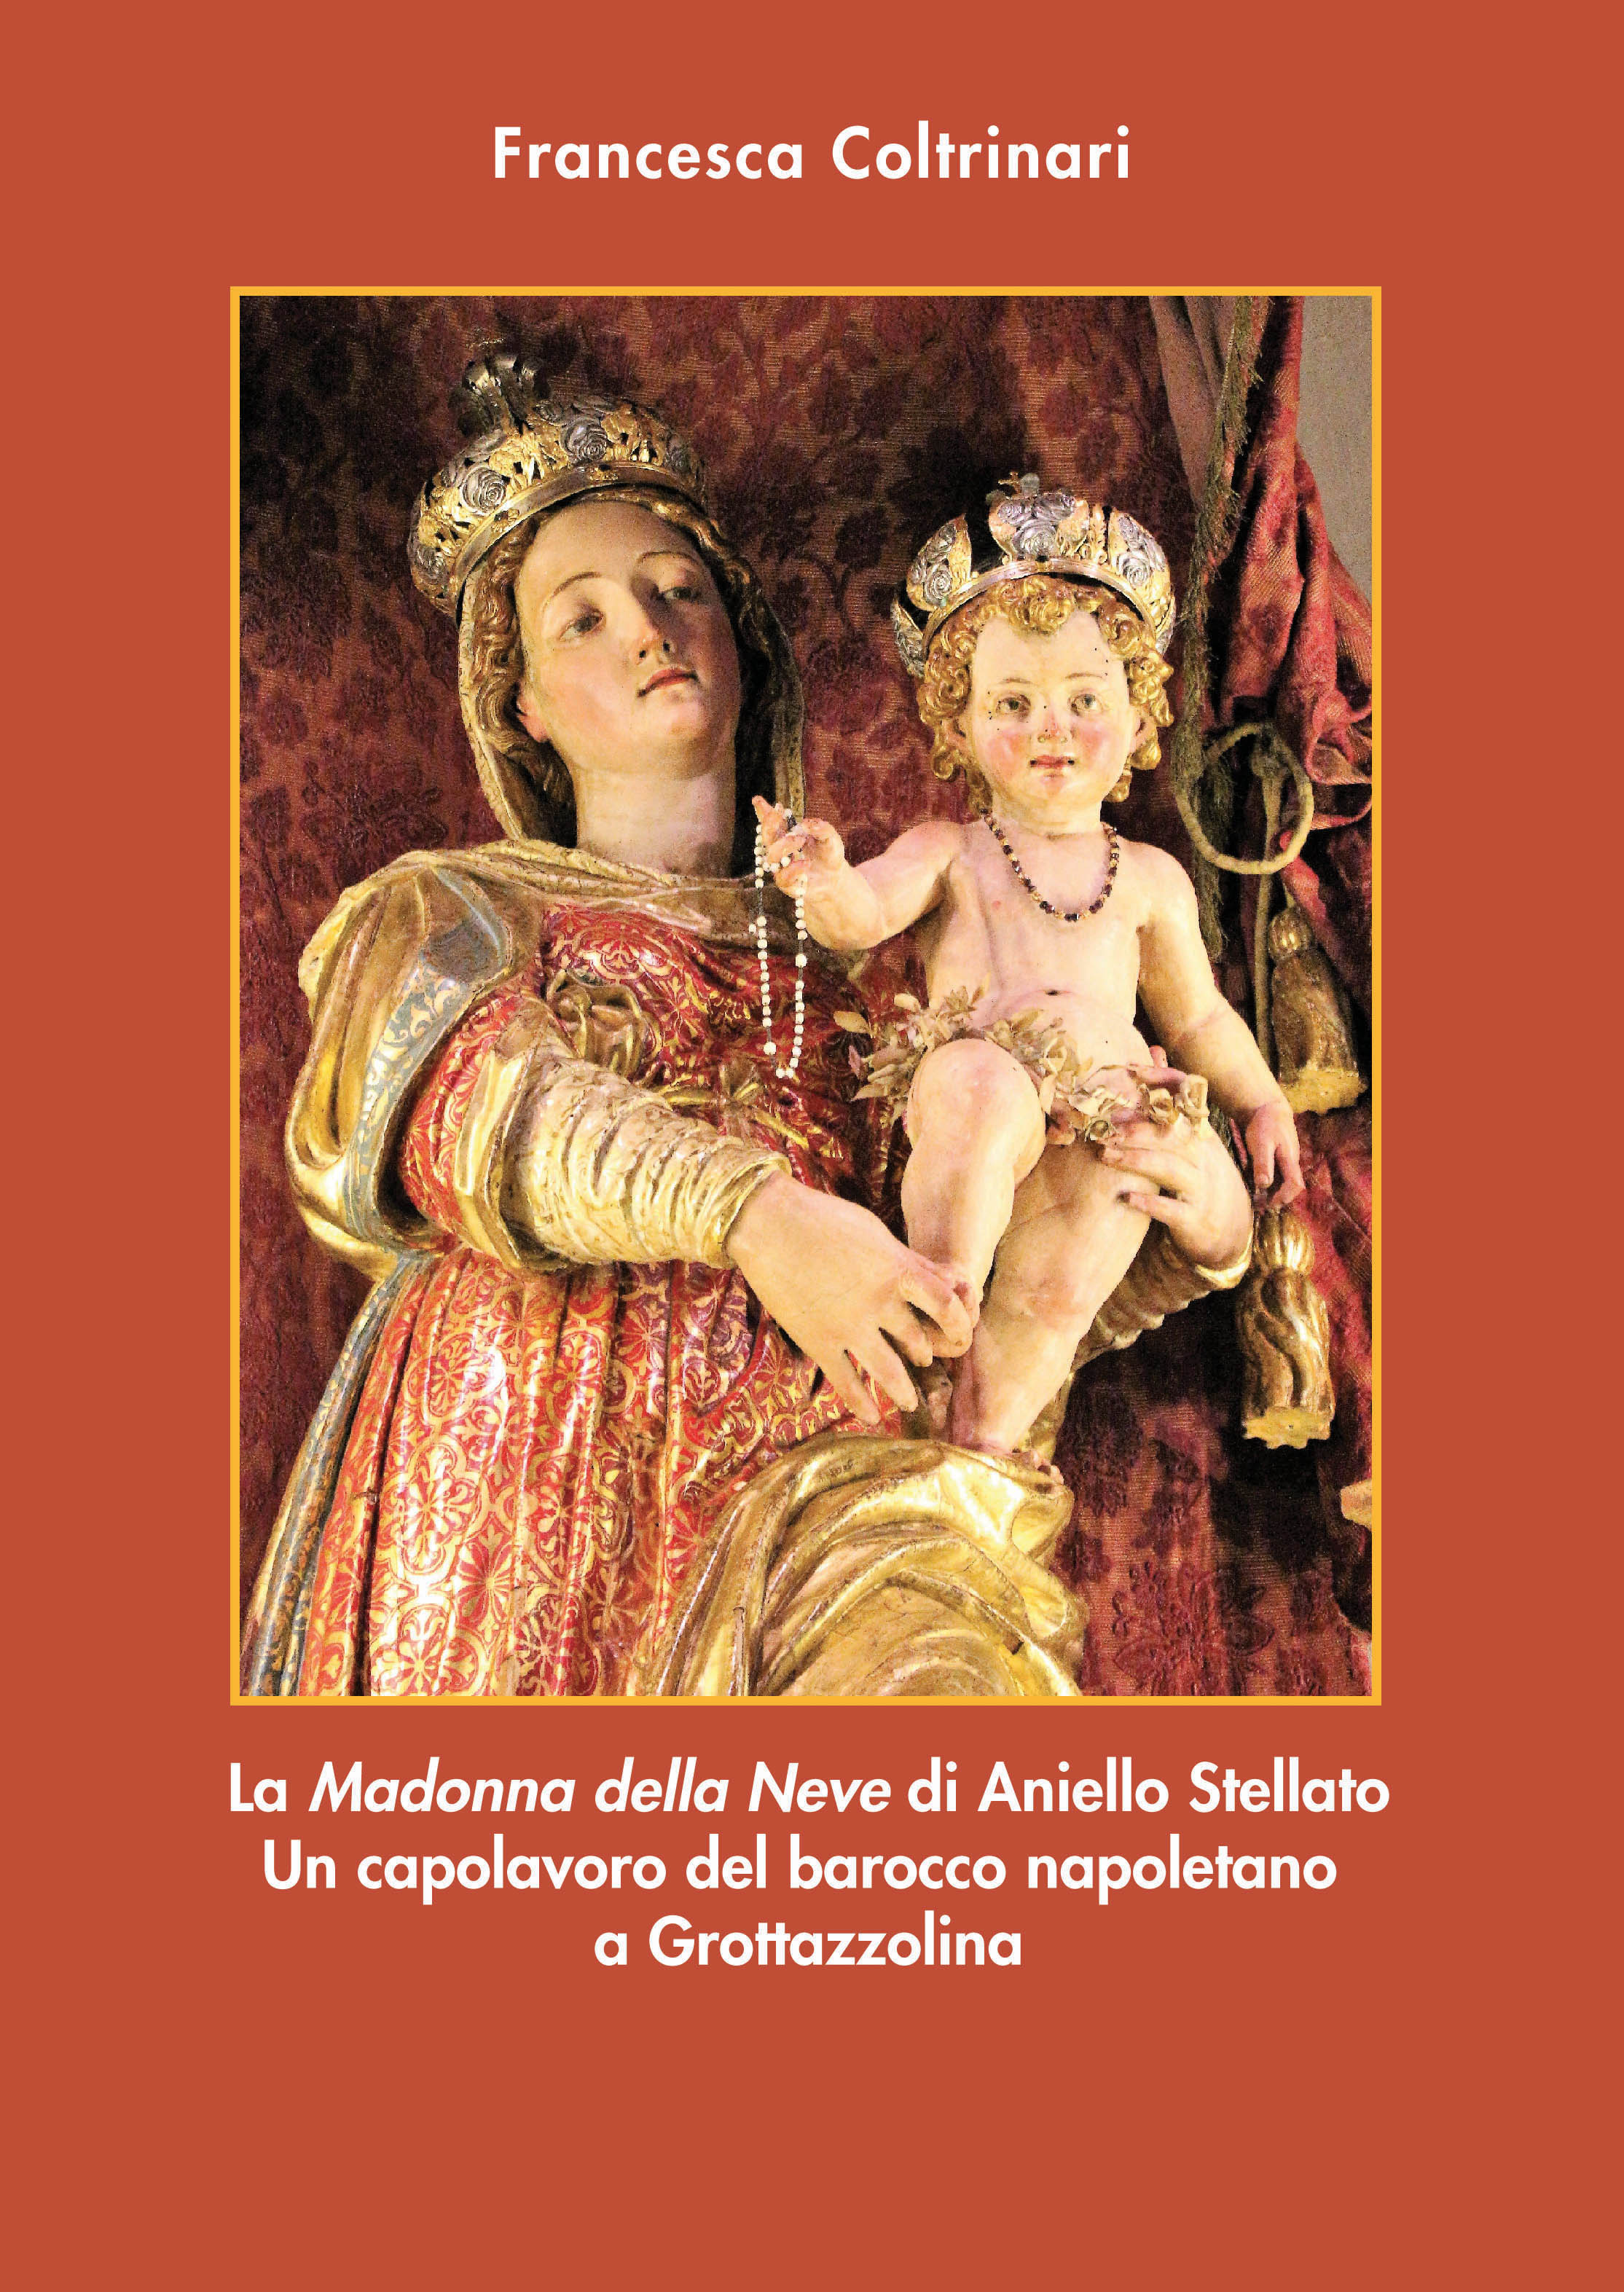 Francesca Coltrinari. La Madonna della Neve di Aniello Stellato. Un capolavoro del barocco napoletano a Grottazzolina